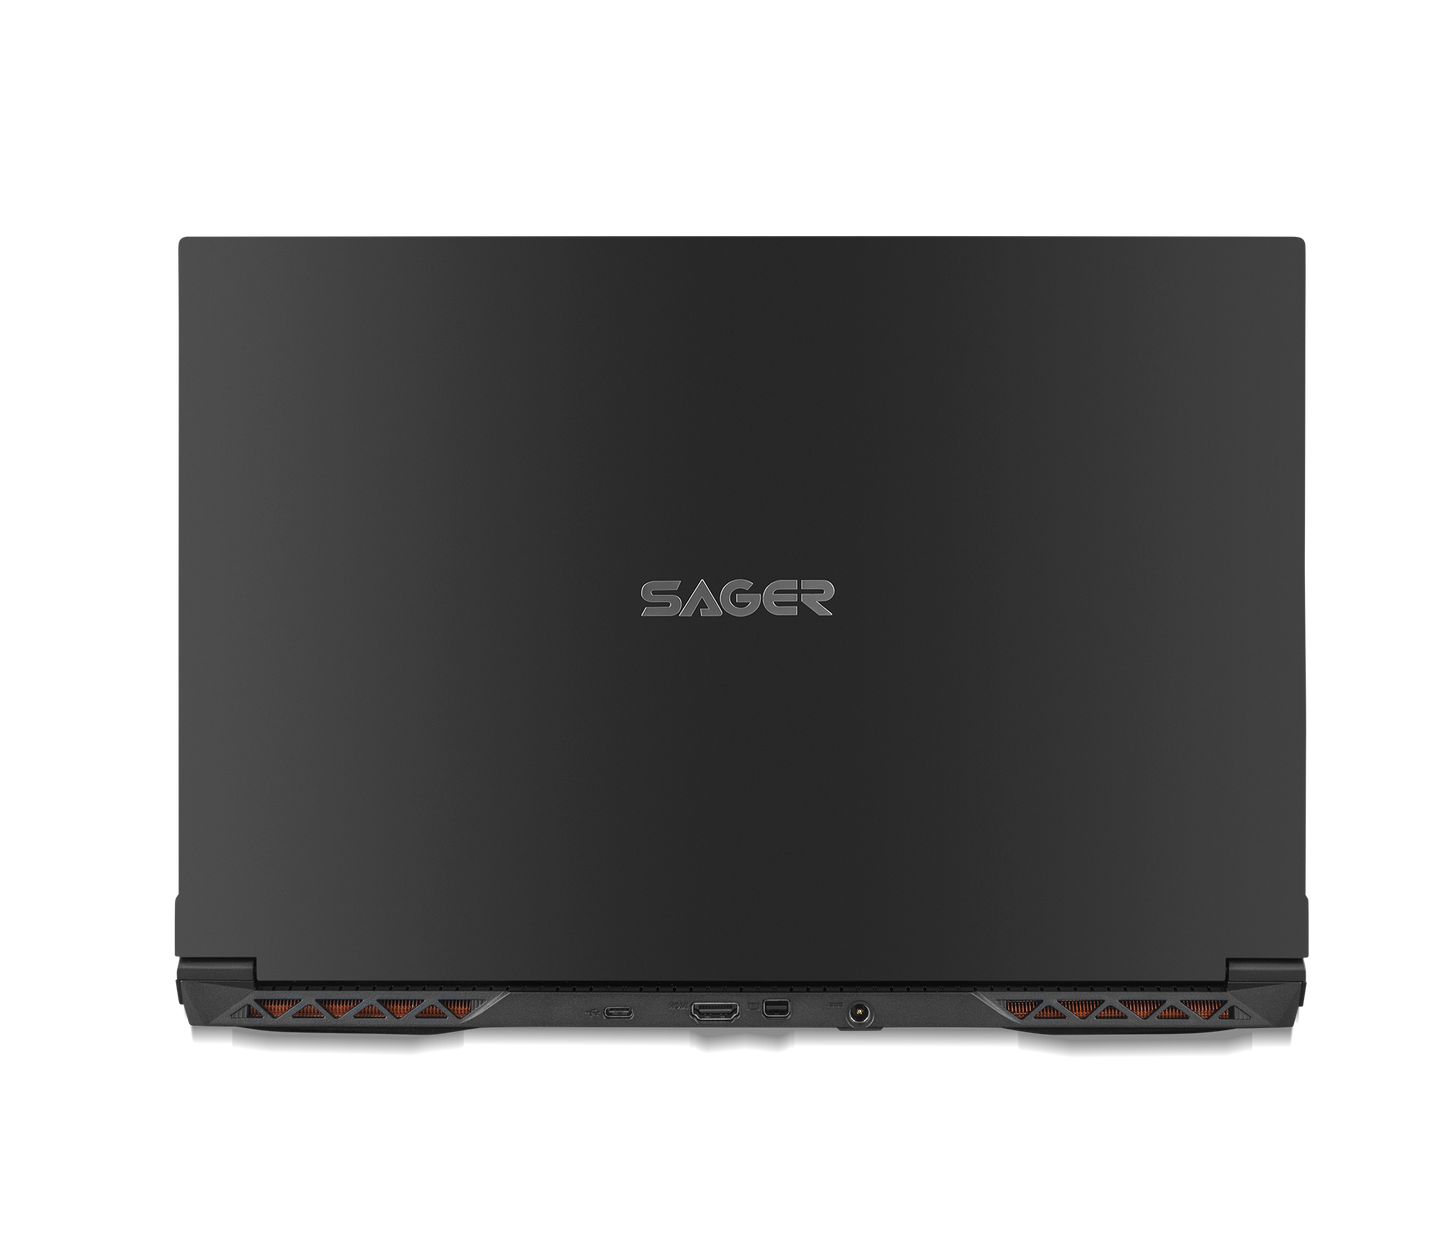 SAGER NP6251J (CLEVO NP50RNJS) Gaming Laptop